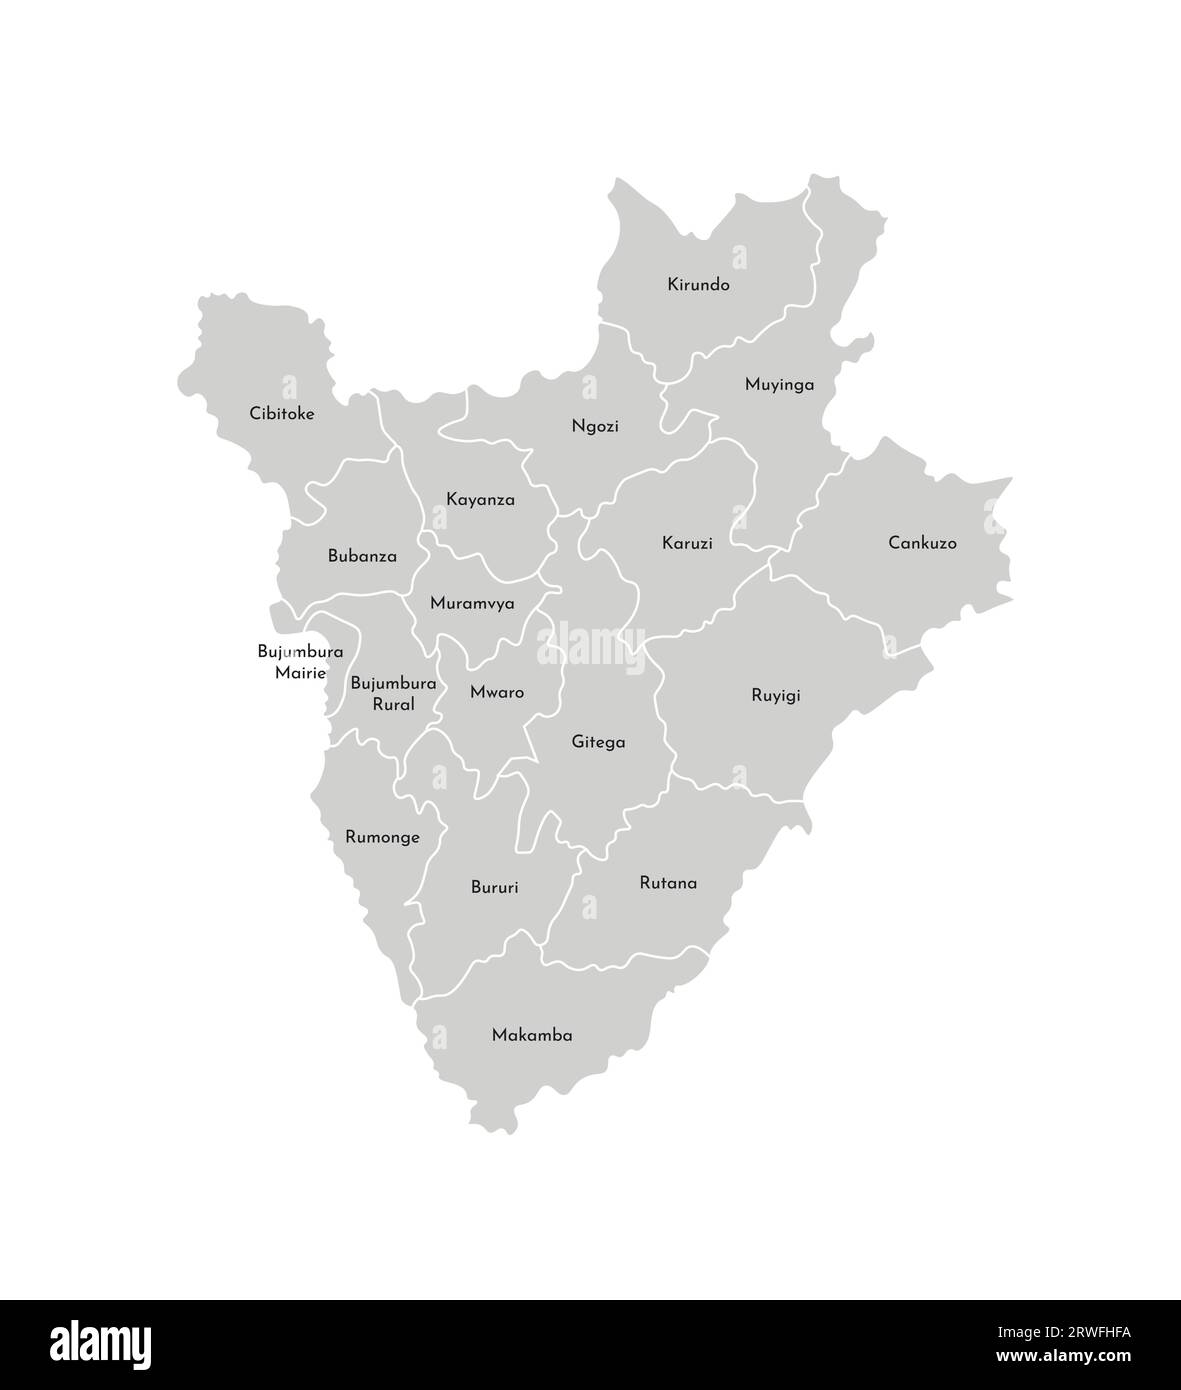 Vektor-isolierte Illustration der vereinfachten Verwaltungskarte Burundis; Grenzen und Namen der Provinzen (Regionen). Graue Silhouetten. Weißer Outlin Stock Vektor